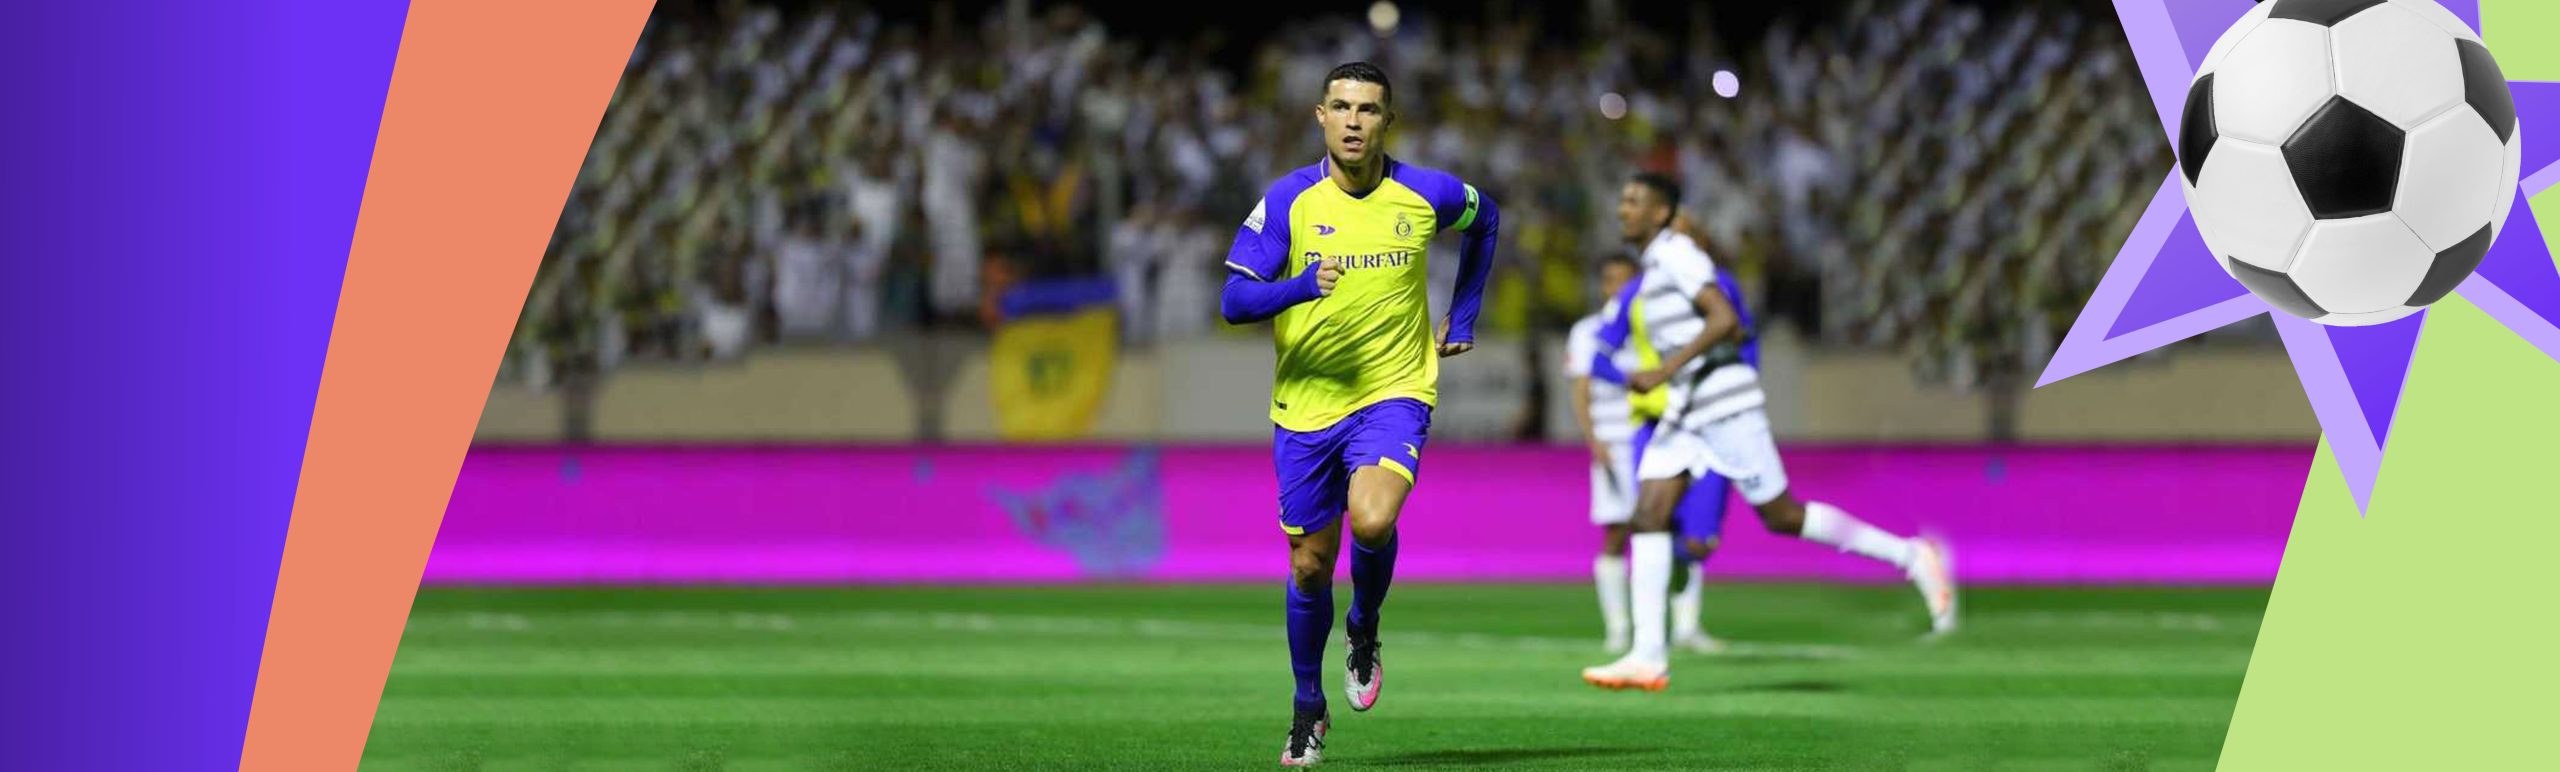 Saudiya chempionati. «An Nasr» safarda g‘alaba qozondi, Ronaldu penaltidan gol urdi